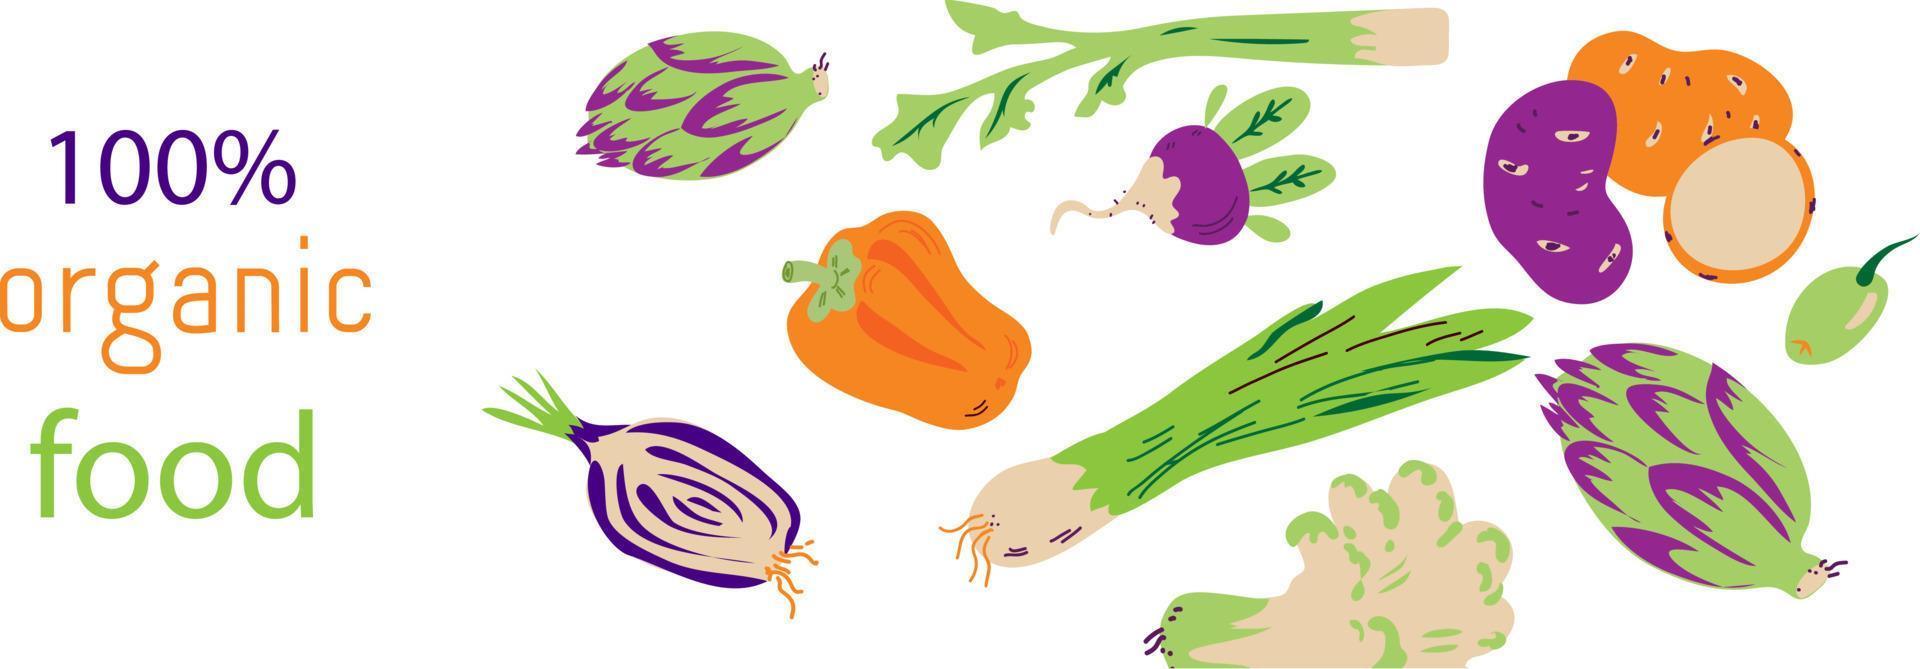 conception de bannière de flyer de légumes, illustration vectorielle. fond décoratif pour flyer ou boutique végétalienne ou marché agricole avec des légumes. vecteur